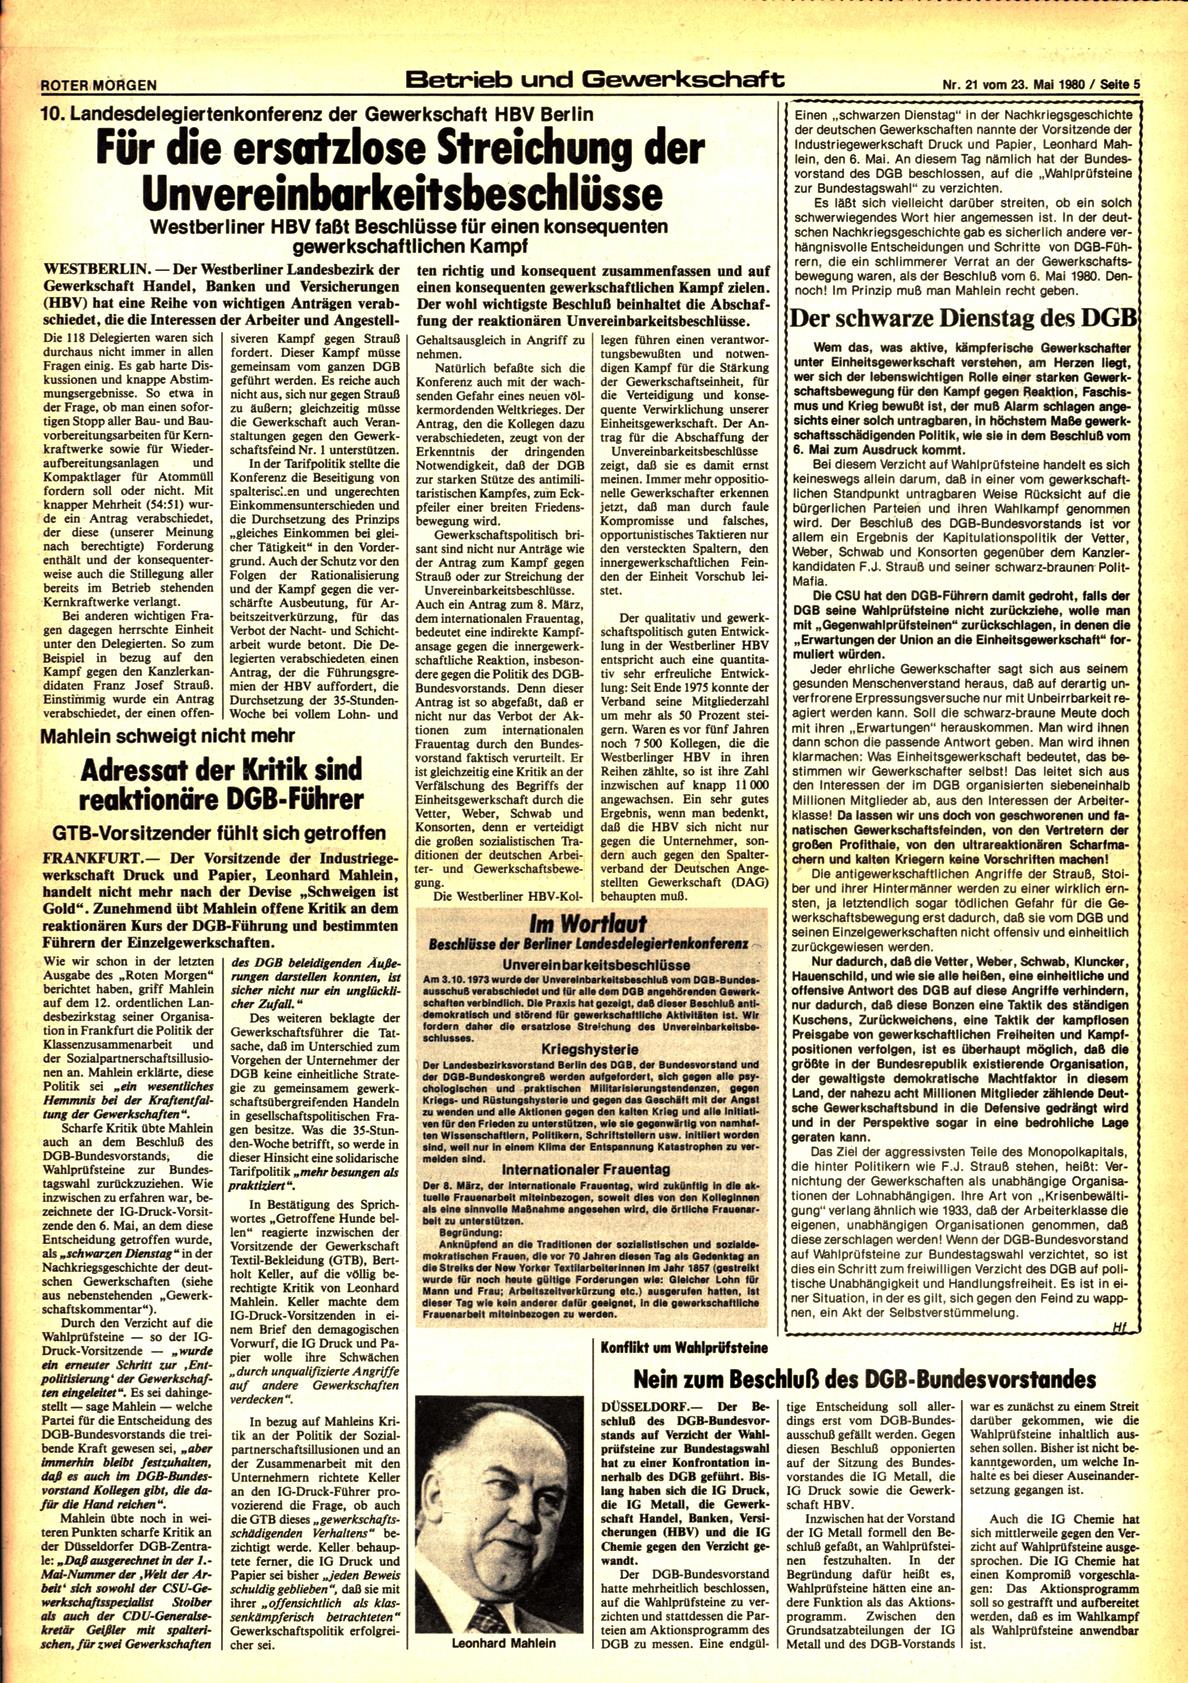 Roter Morgen, 14. Jg., 23. Mai 1980, Nr. 21, Seite 5